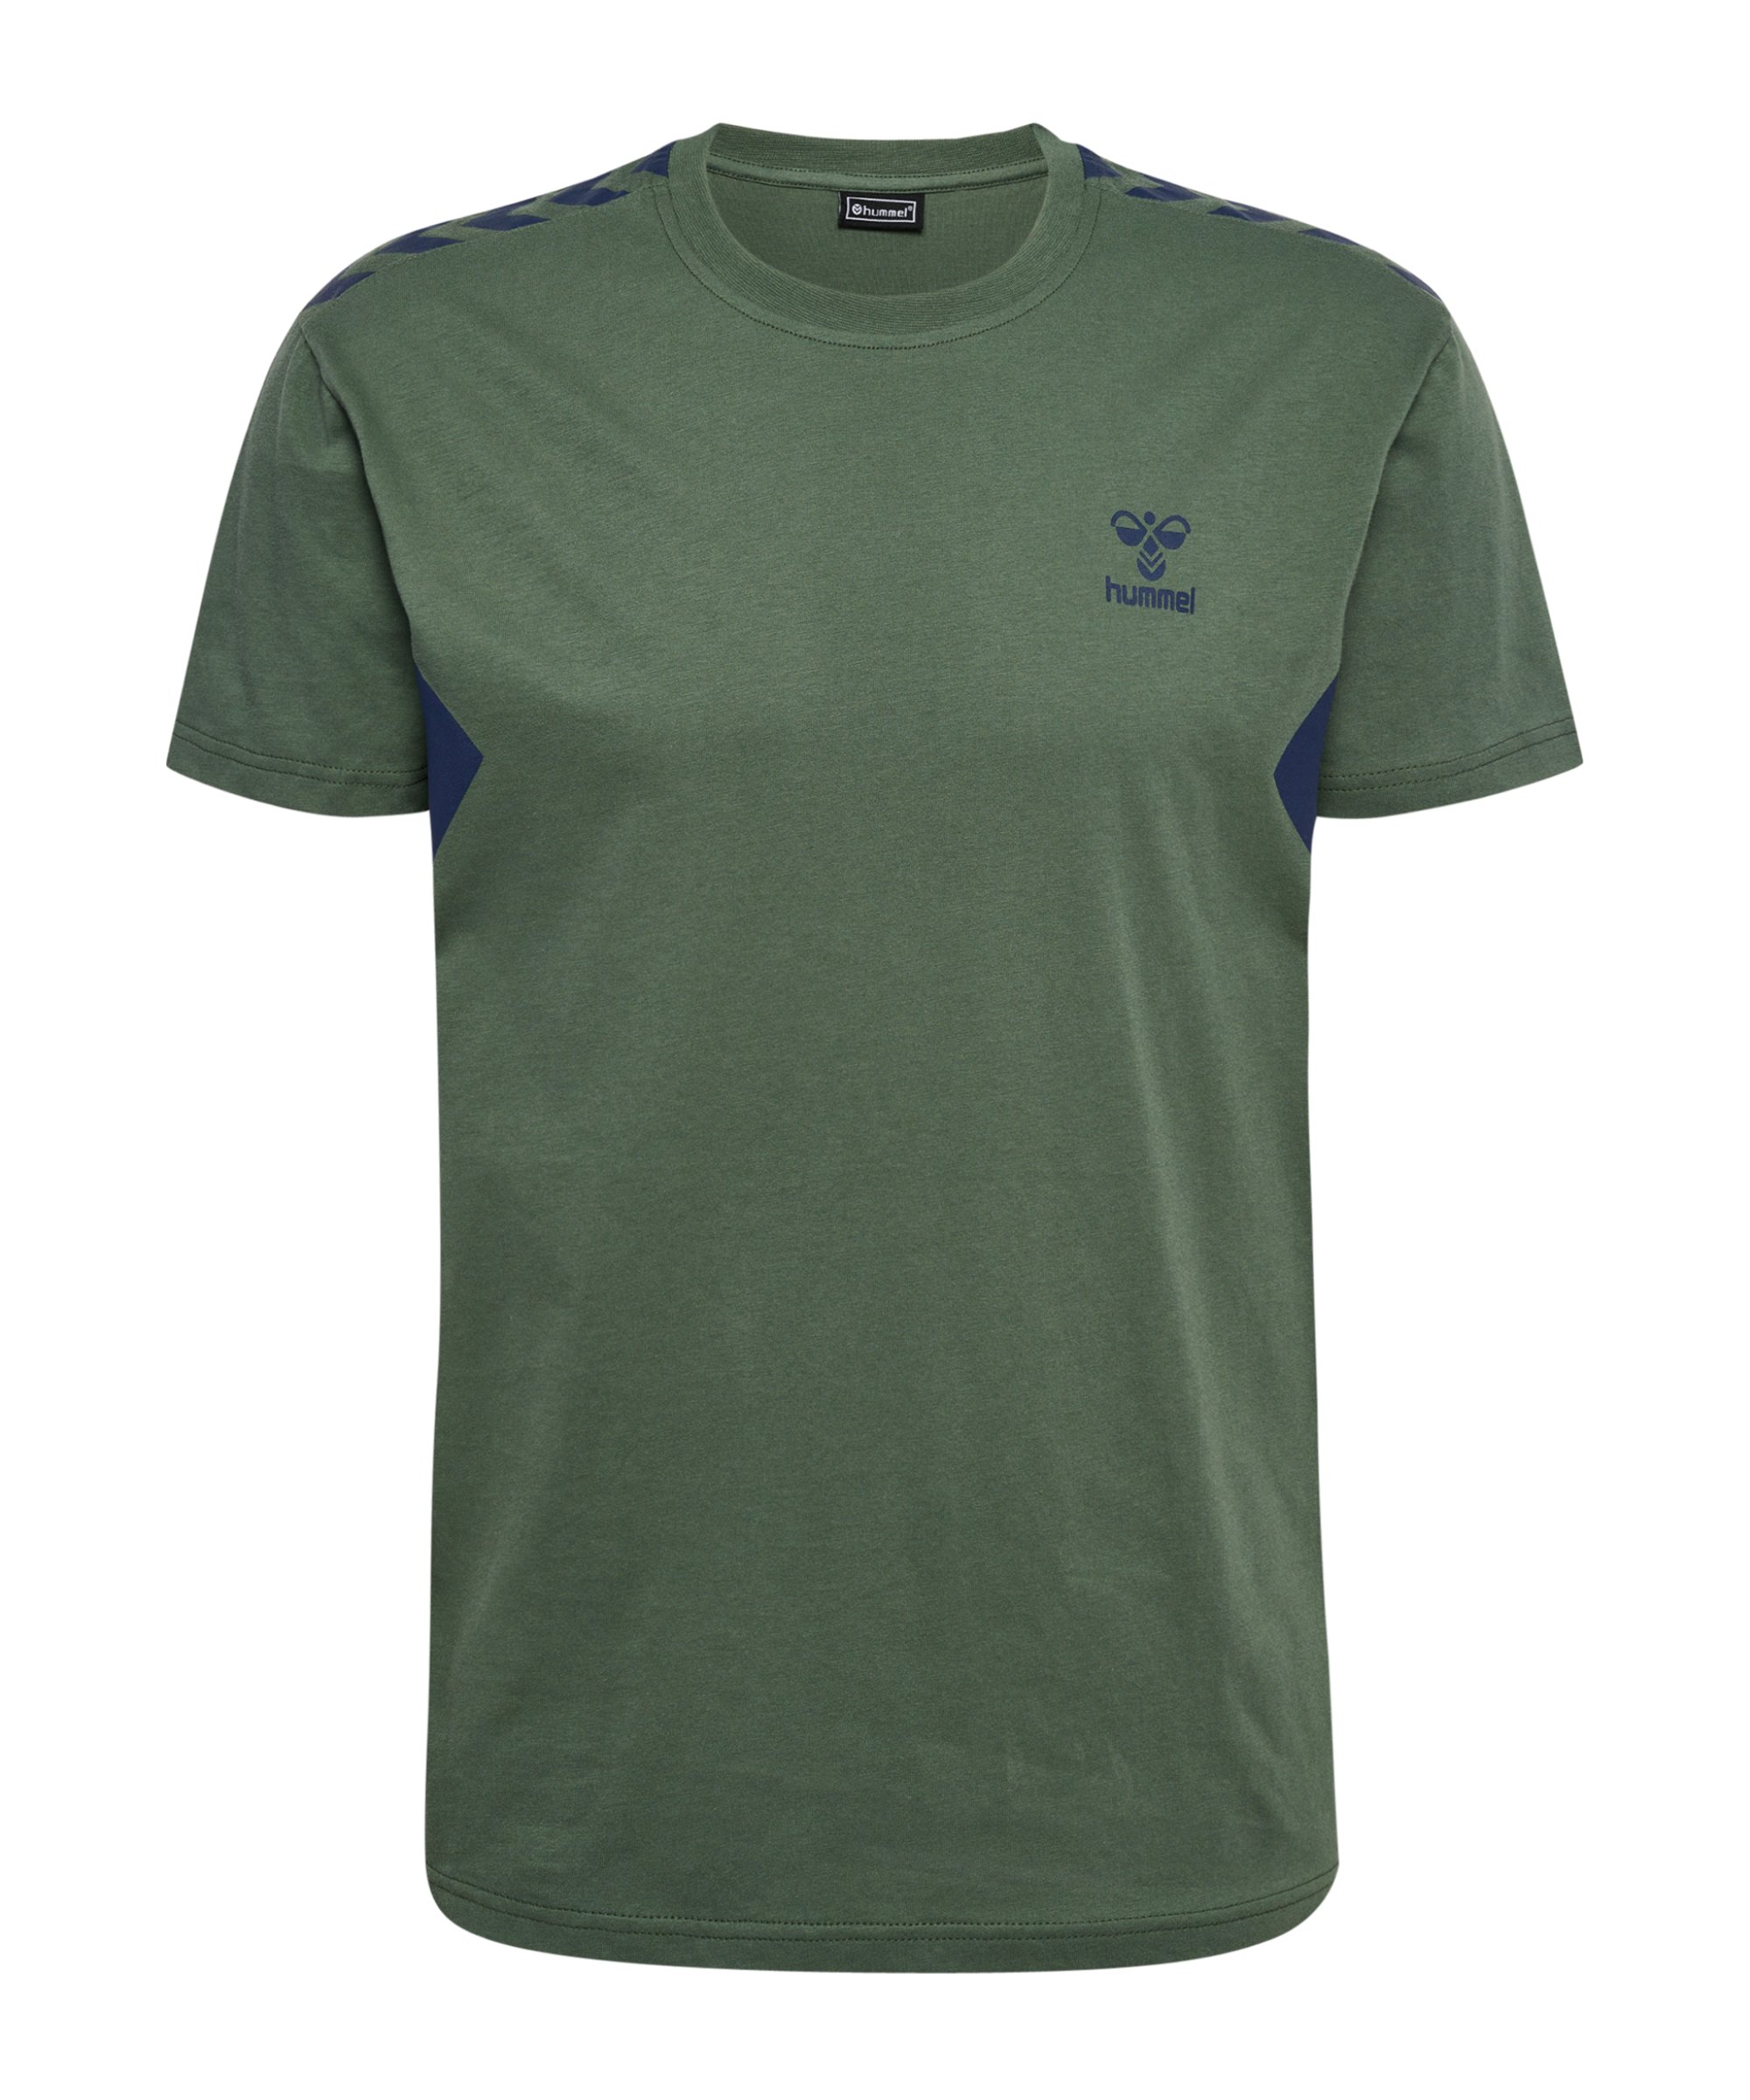 Hummel hmlSTALTIC T-Shirt Grün F6770 - gruen